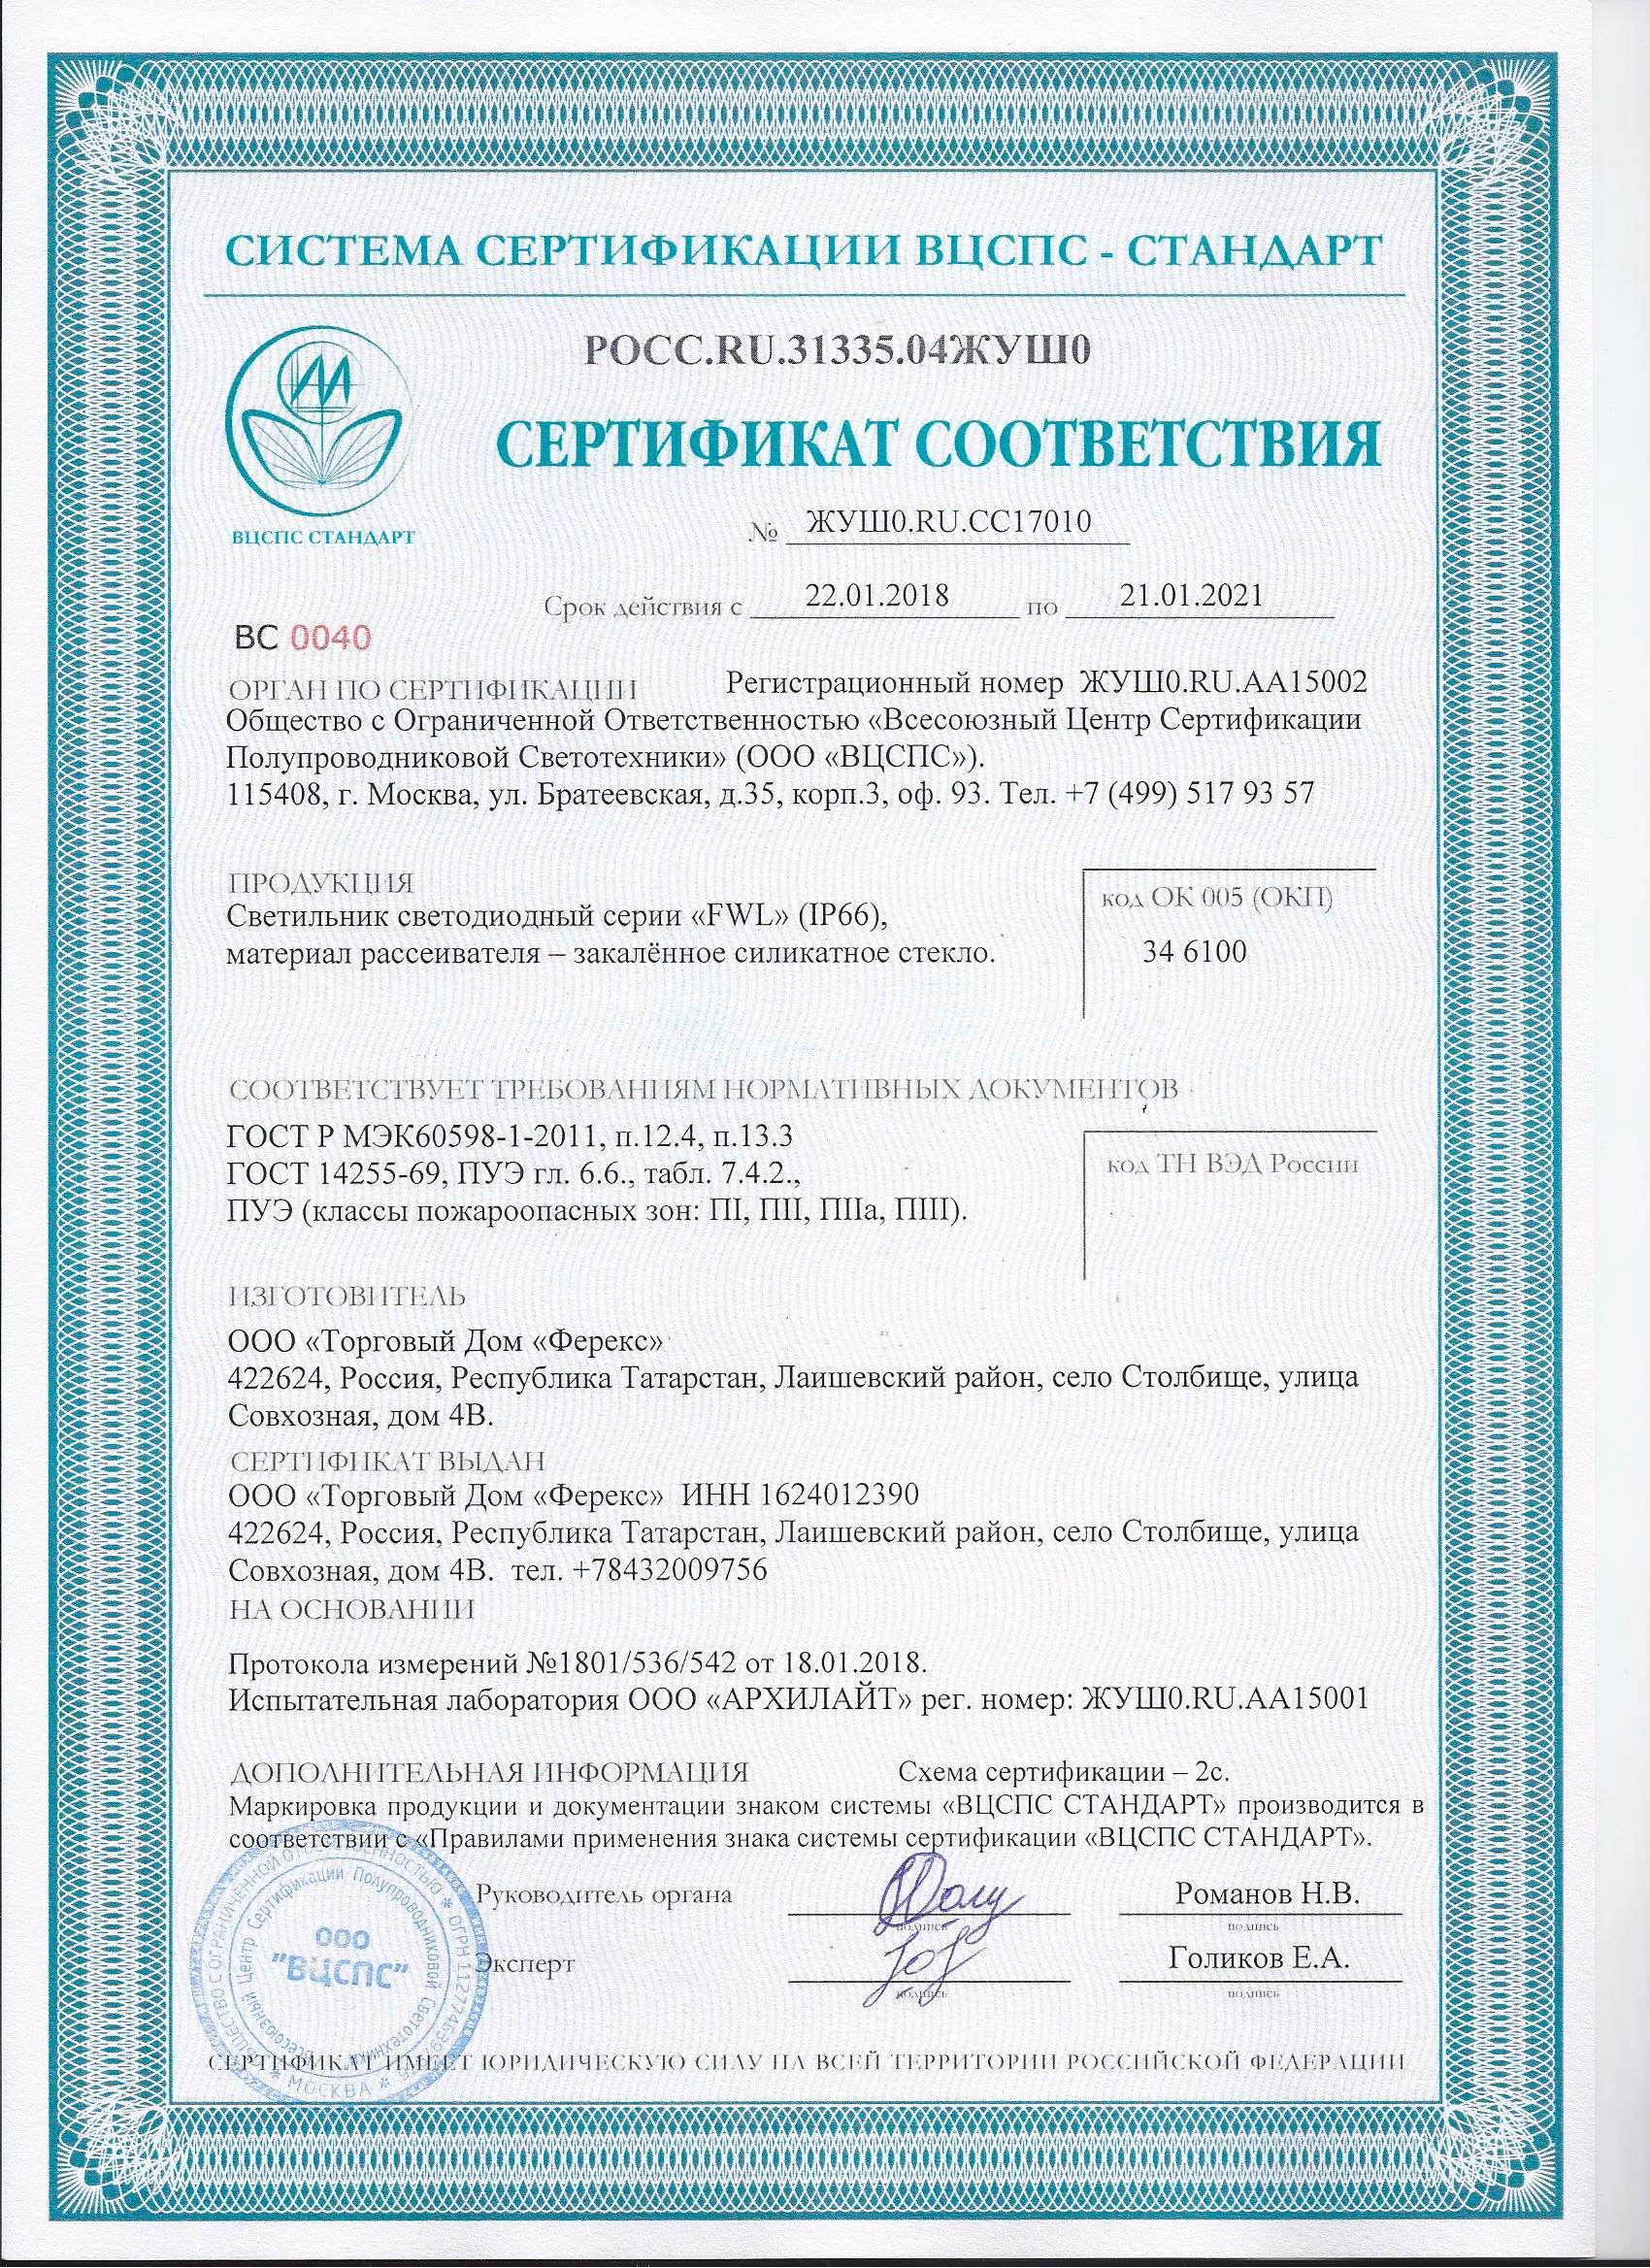 Сертификат соответствия FWL до 2021 г. (классы пожароопасных зон ПI, ПIIа, ПIII)